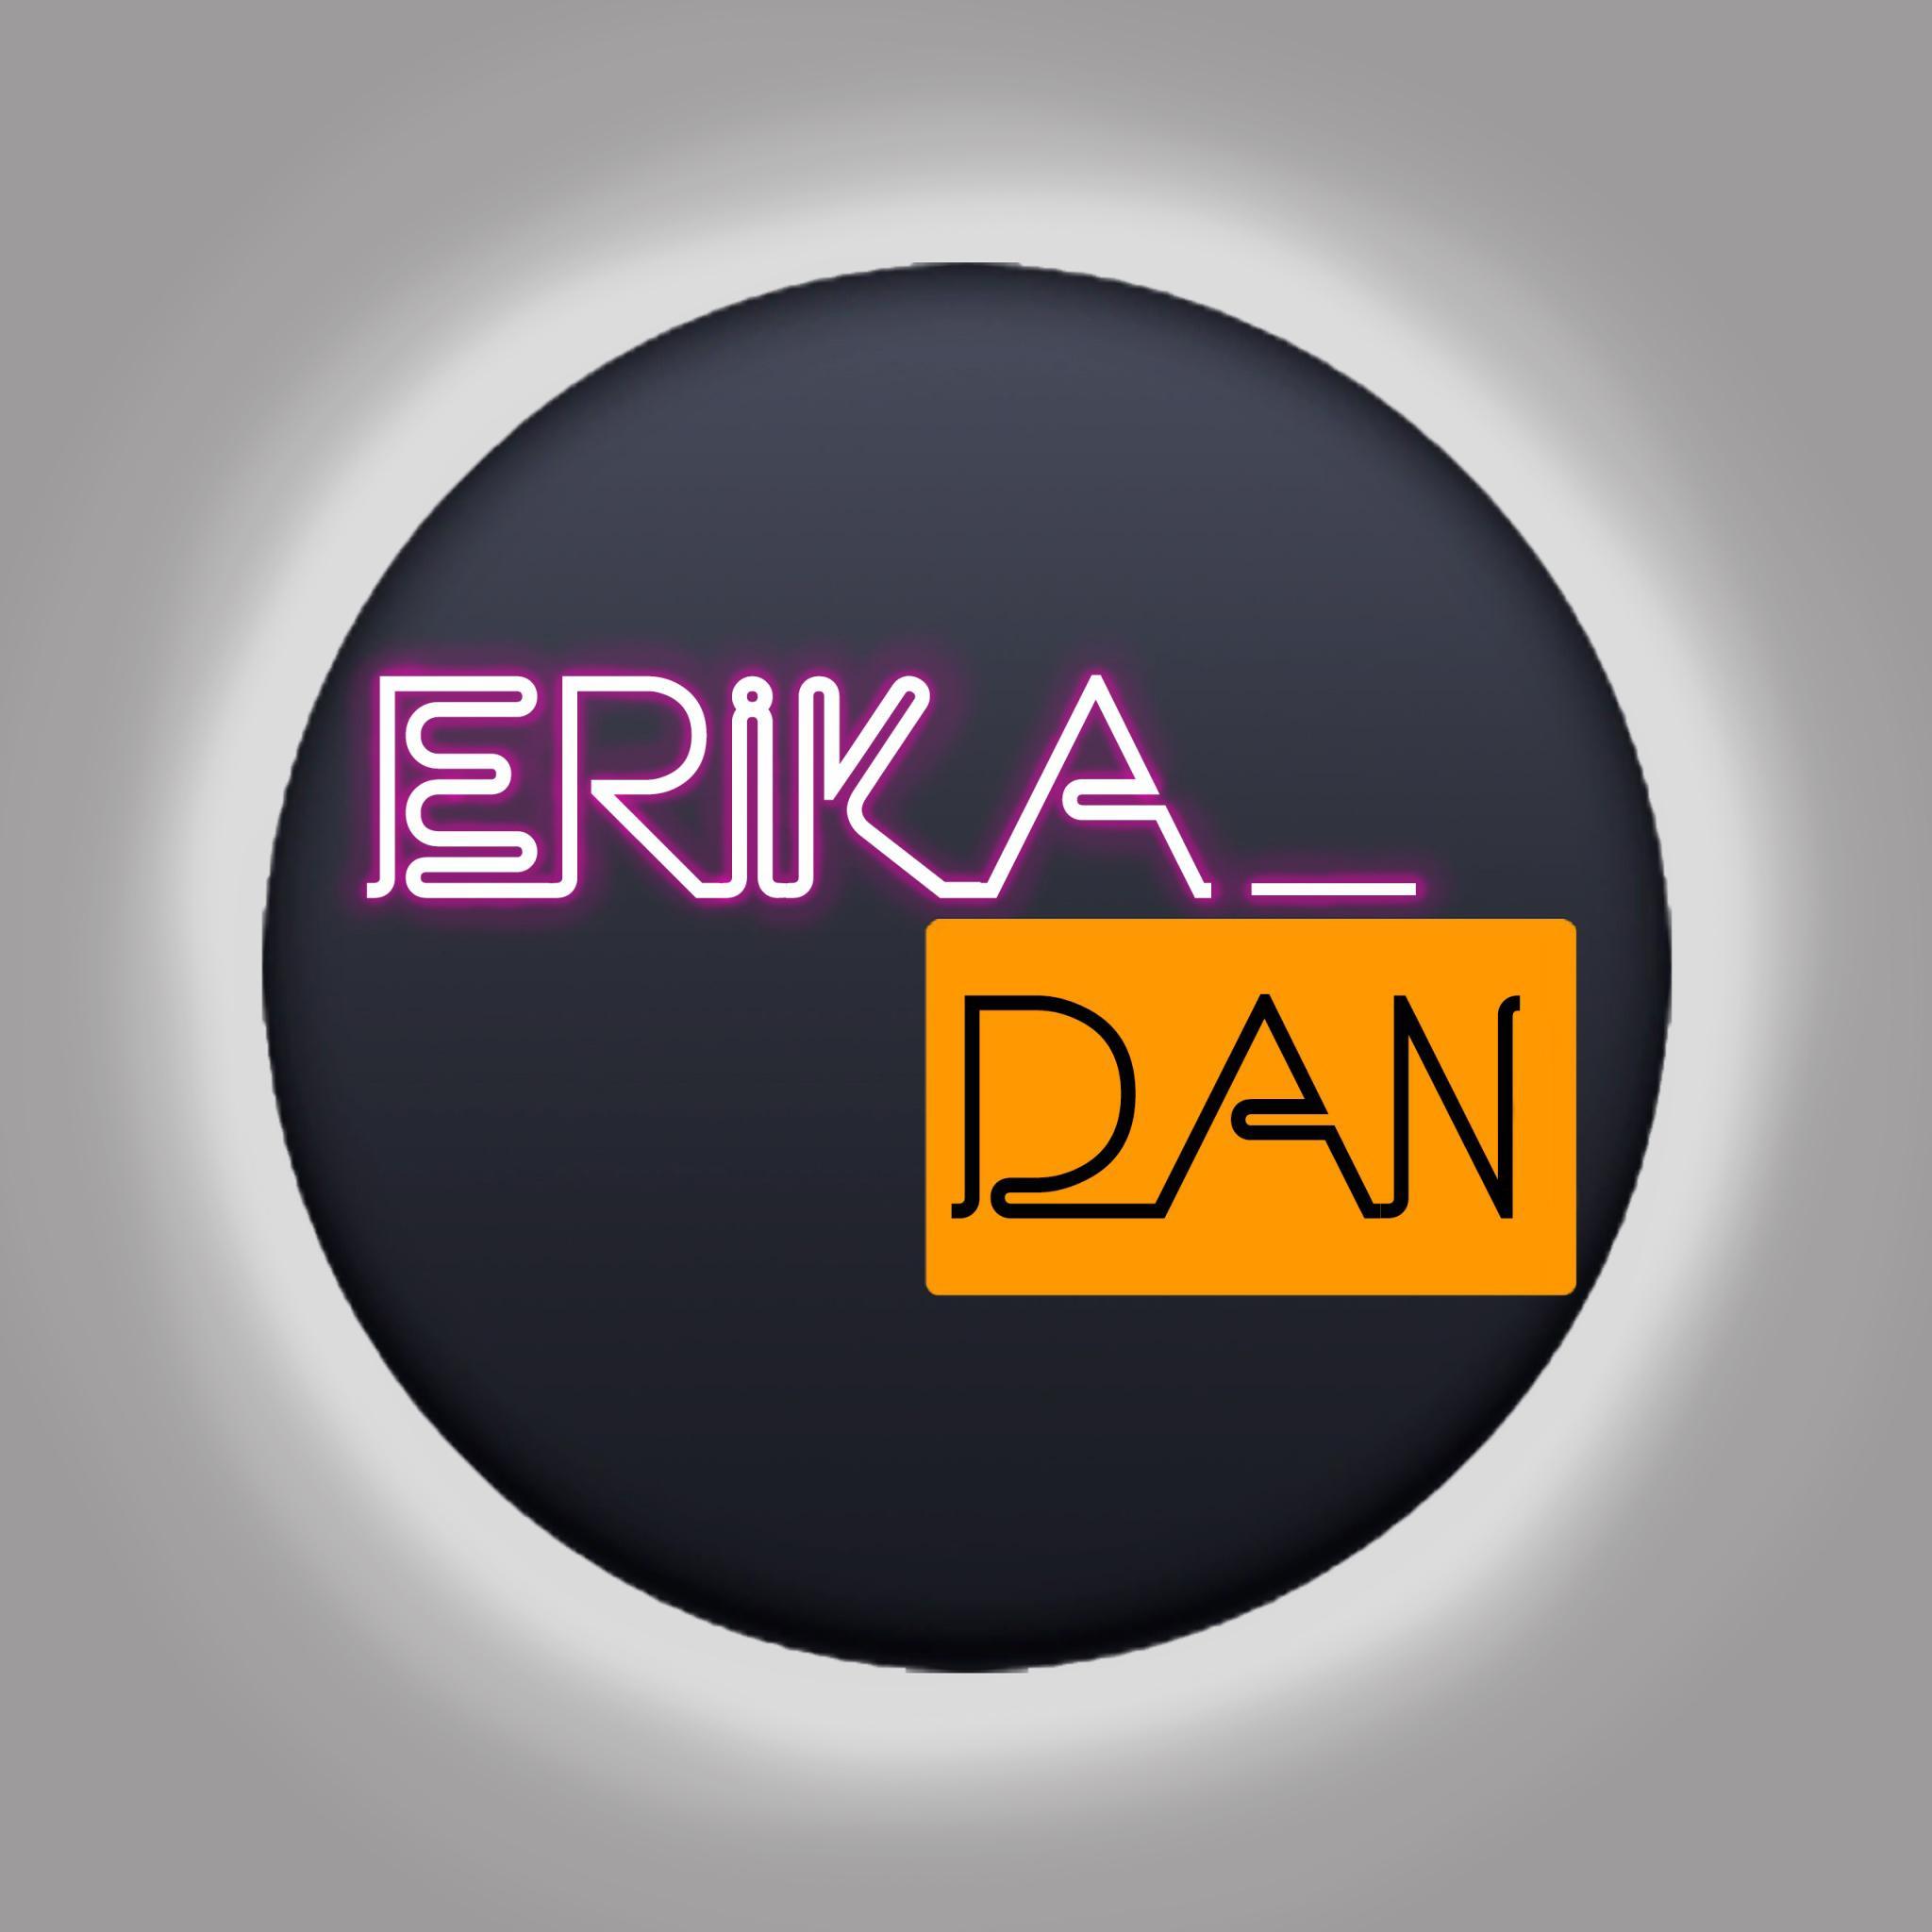 Erika_Dan live cam on Cam4.com